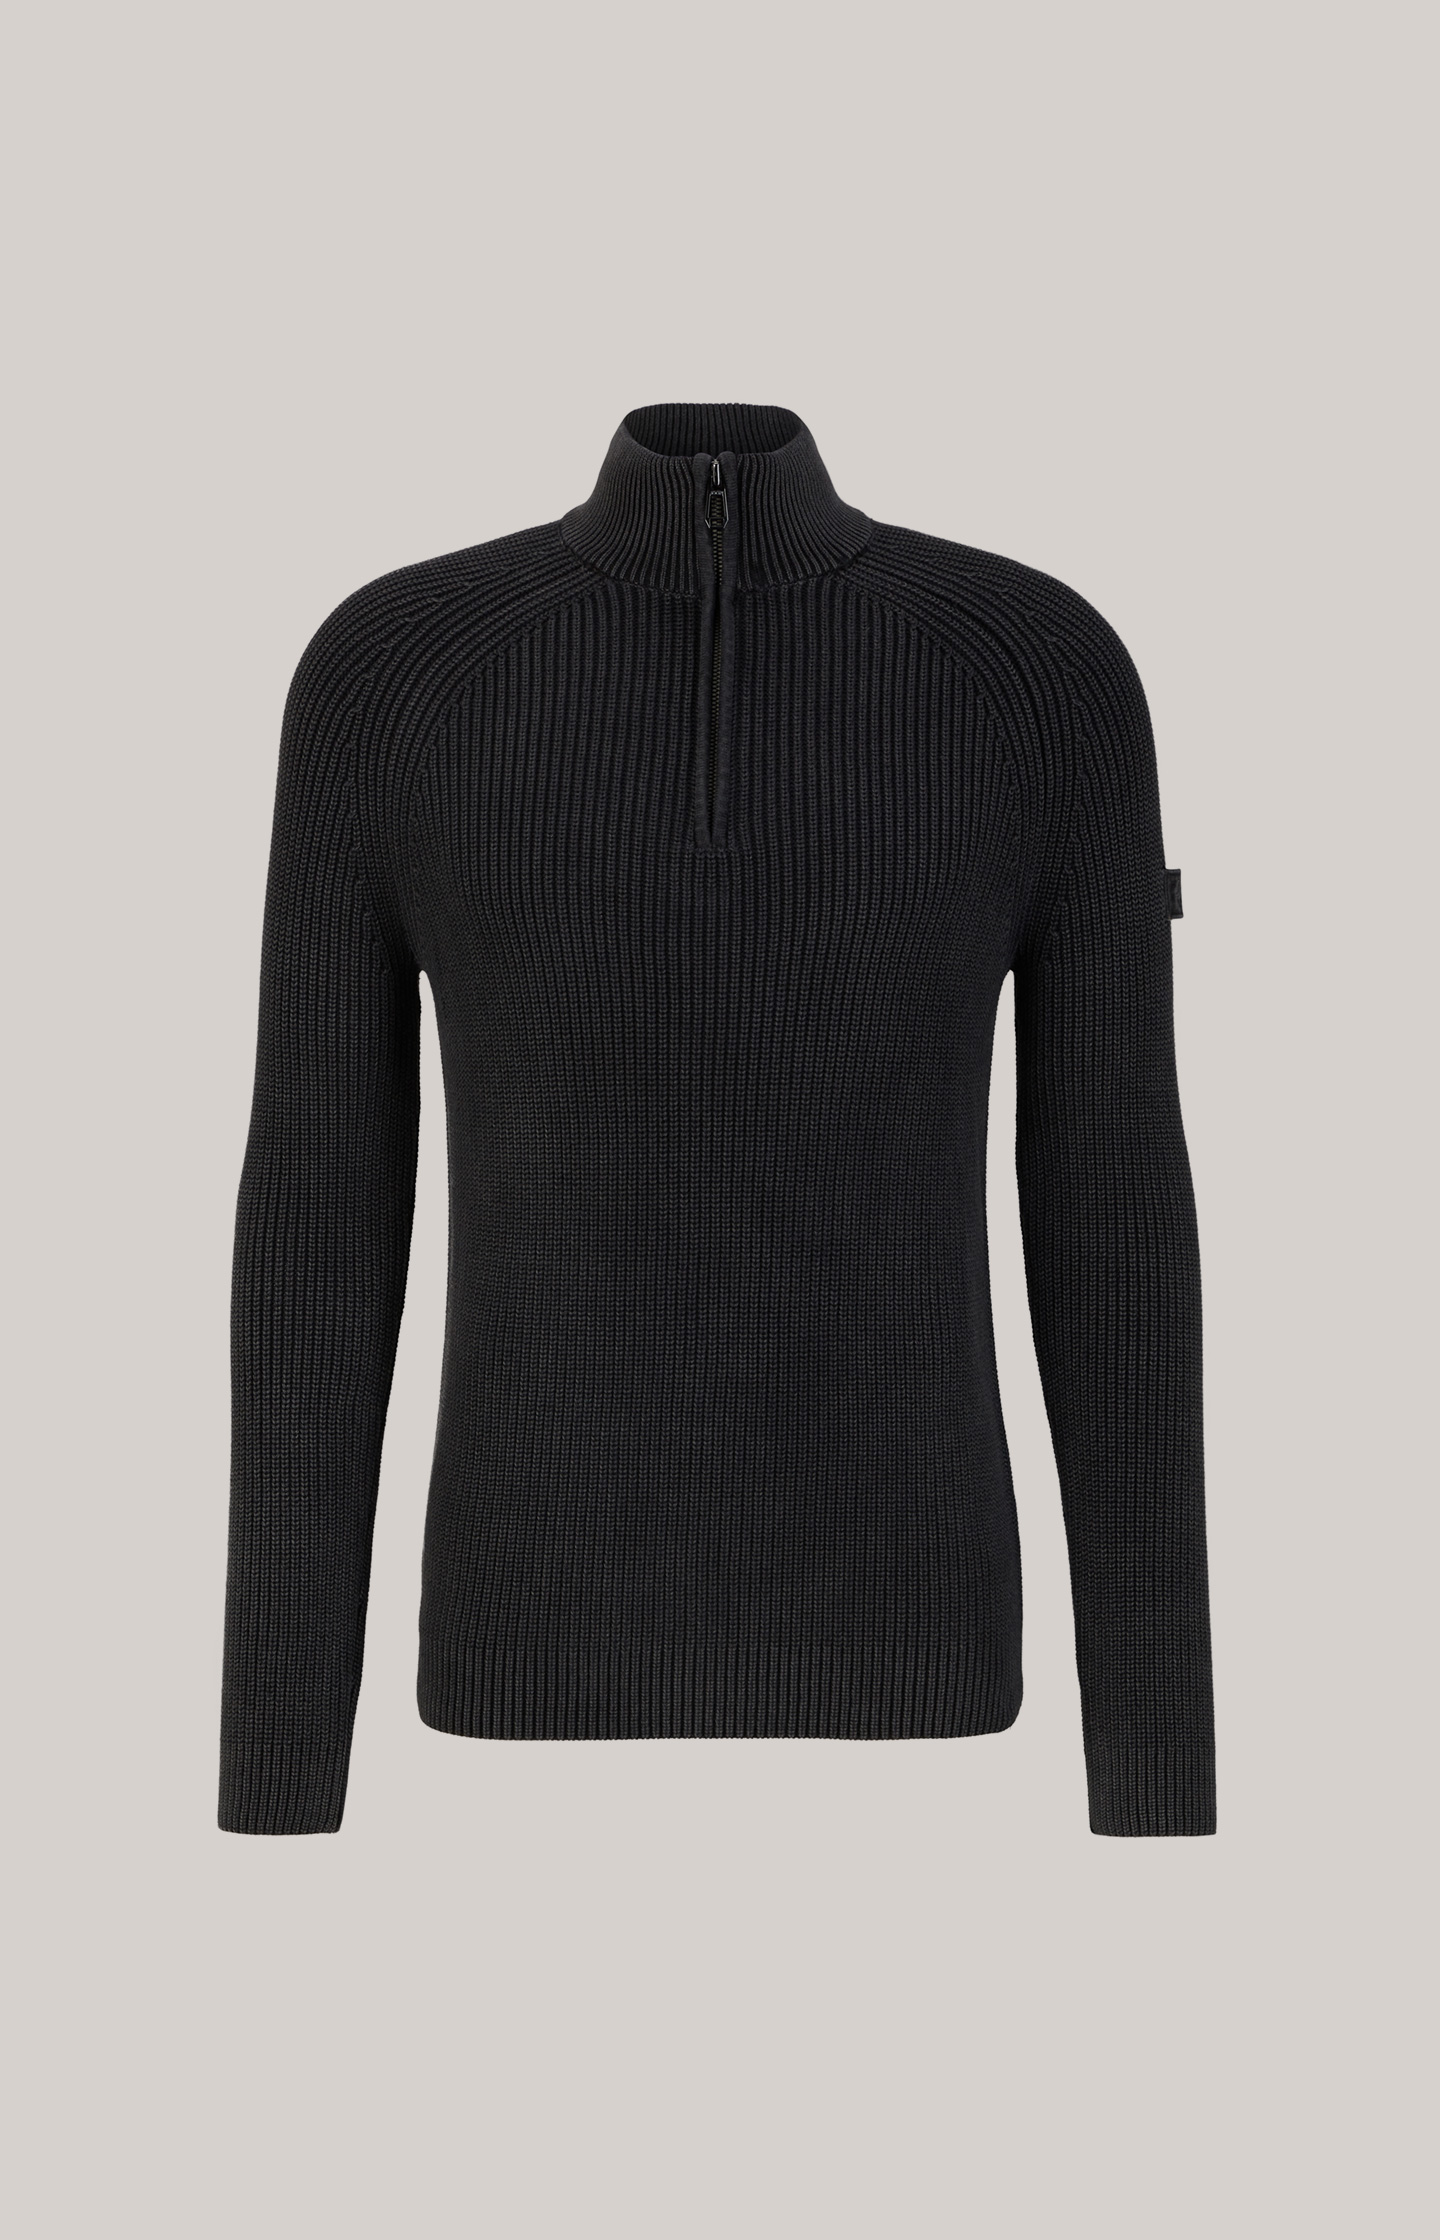 Henricus Cotton Jumper in Black/Grey JOOP! Online in Shop - the